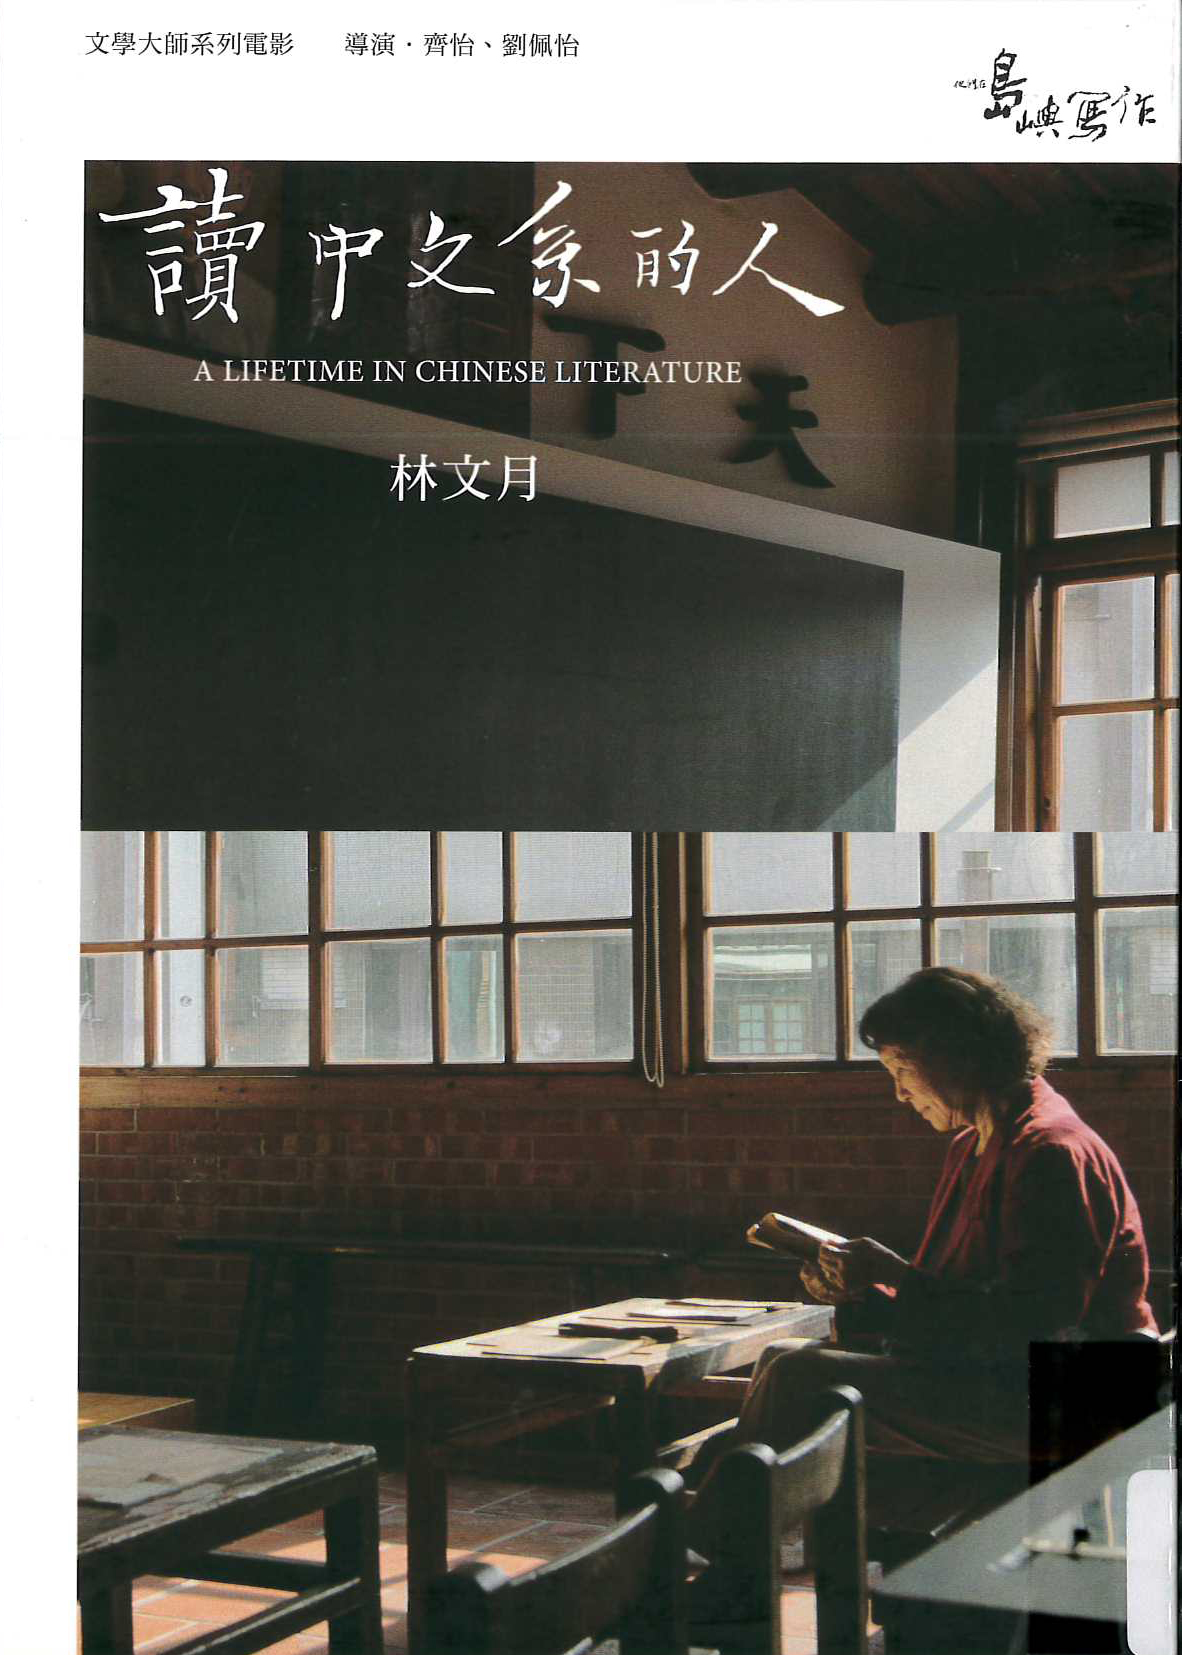 他們在島嶼寫作[2][4][普遍級:紀錄片] : 讀中文系的人 = The inspired island[2][4] : a lifetime in Chinese literature